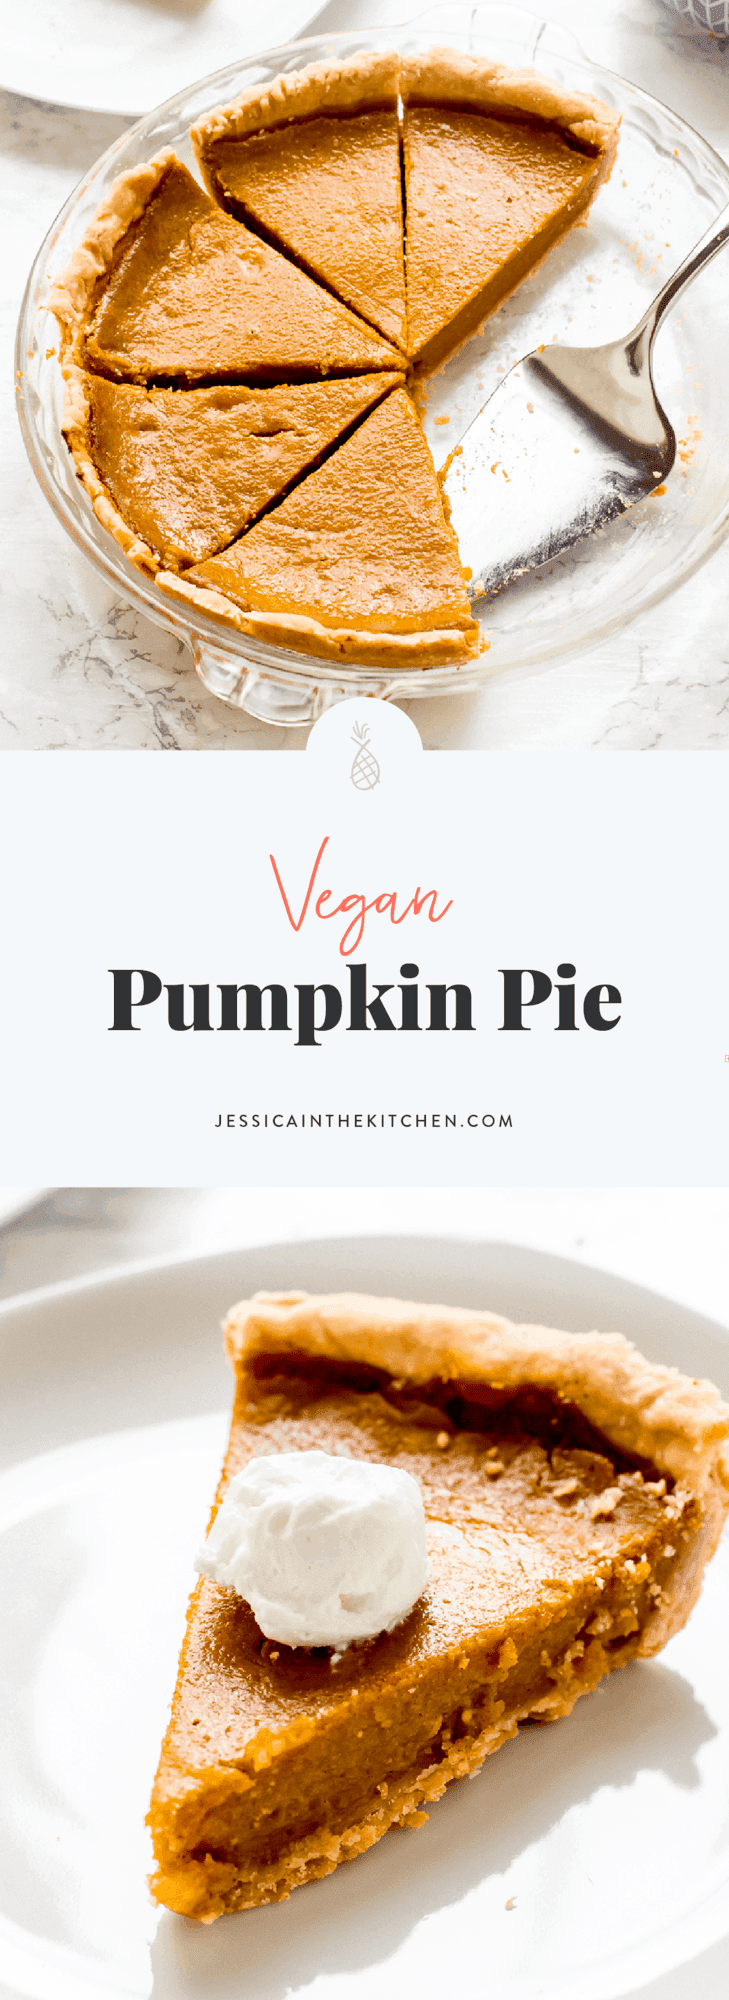 Vegan Pumpkin Pie (9 Ingredients) - Jessica in the Kitchen